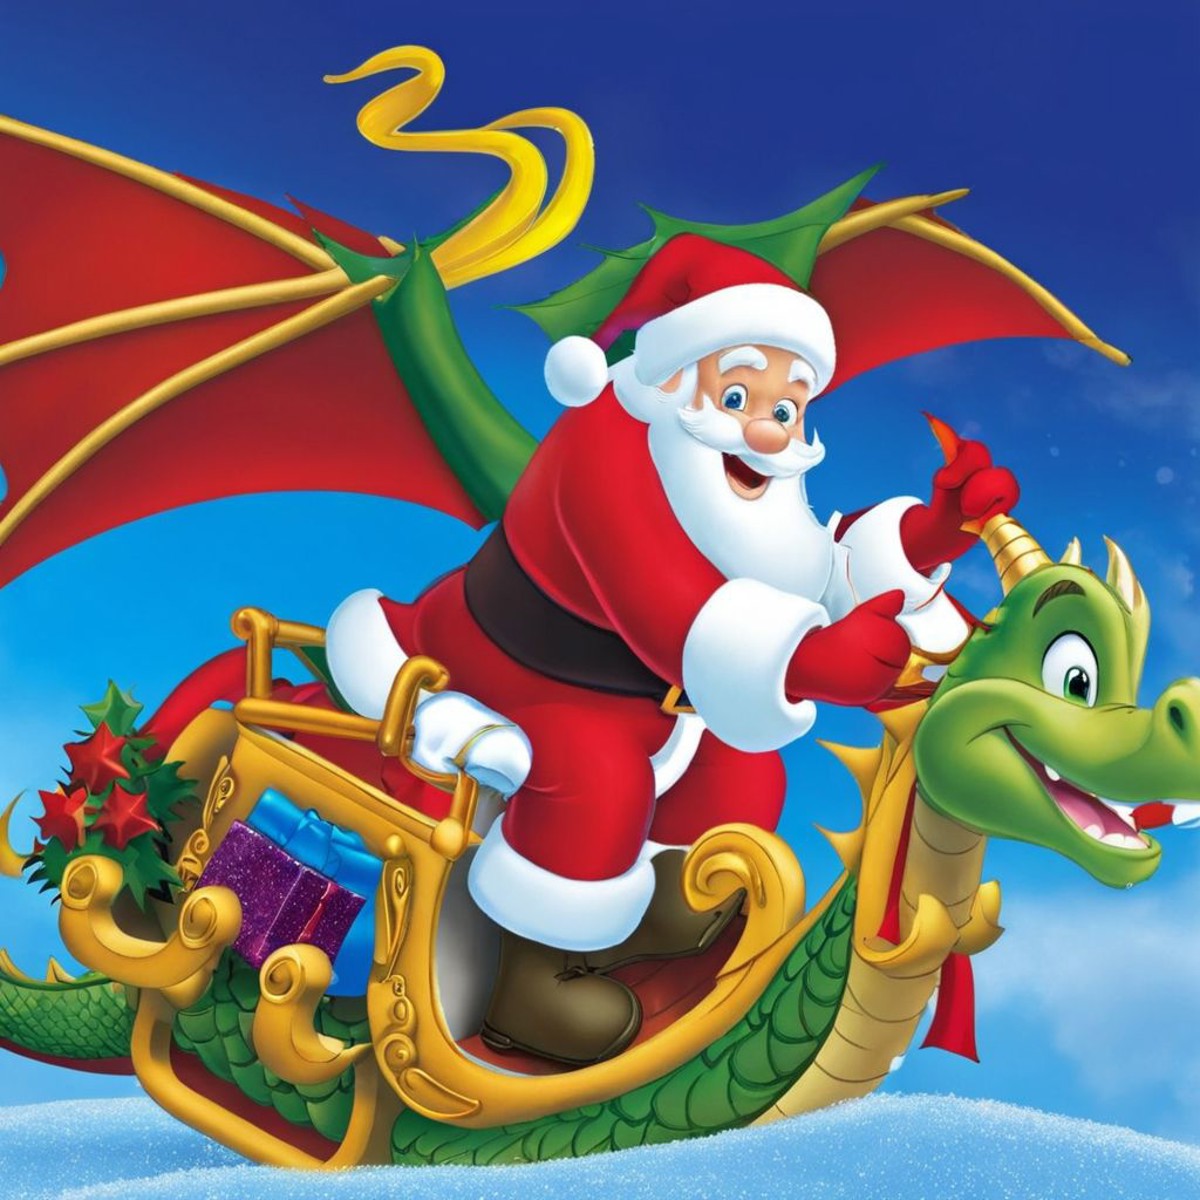 Santa riding a might dragon DreamDisPix style <lora:SDXL-DreamDisPix-Lora-r32:0.8>